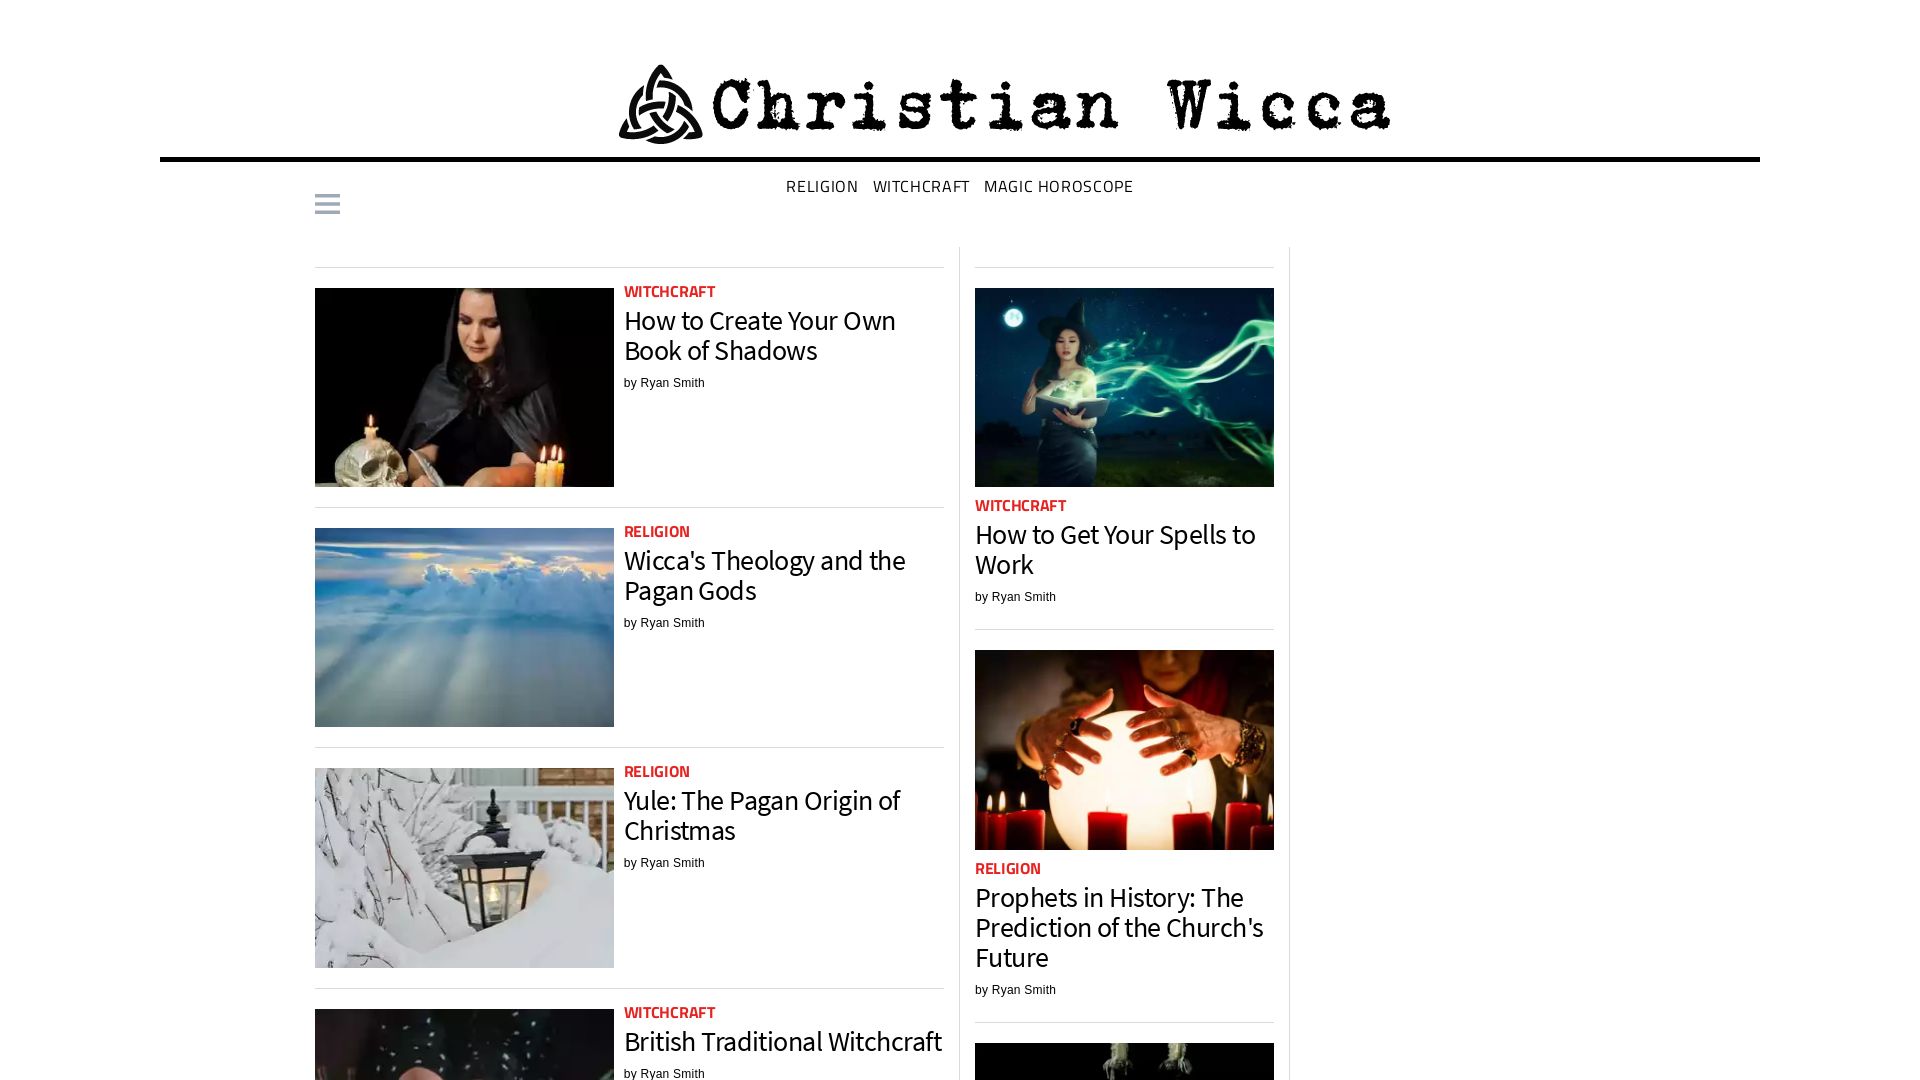 Webseitenstatus christianwicca.org ist   ONLINE